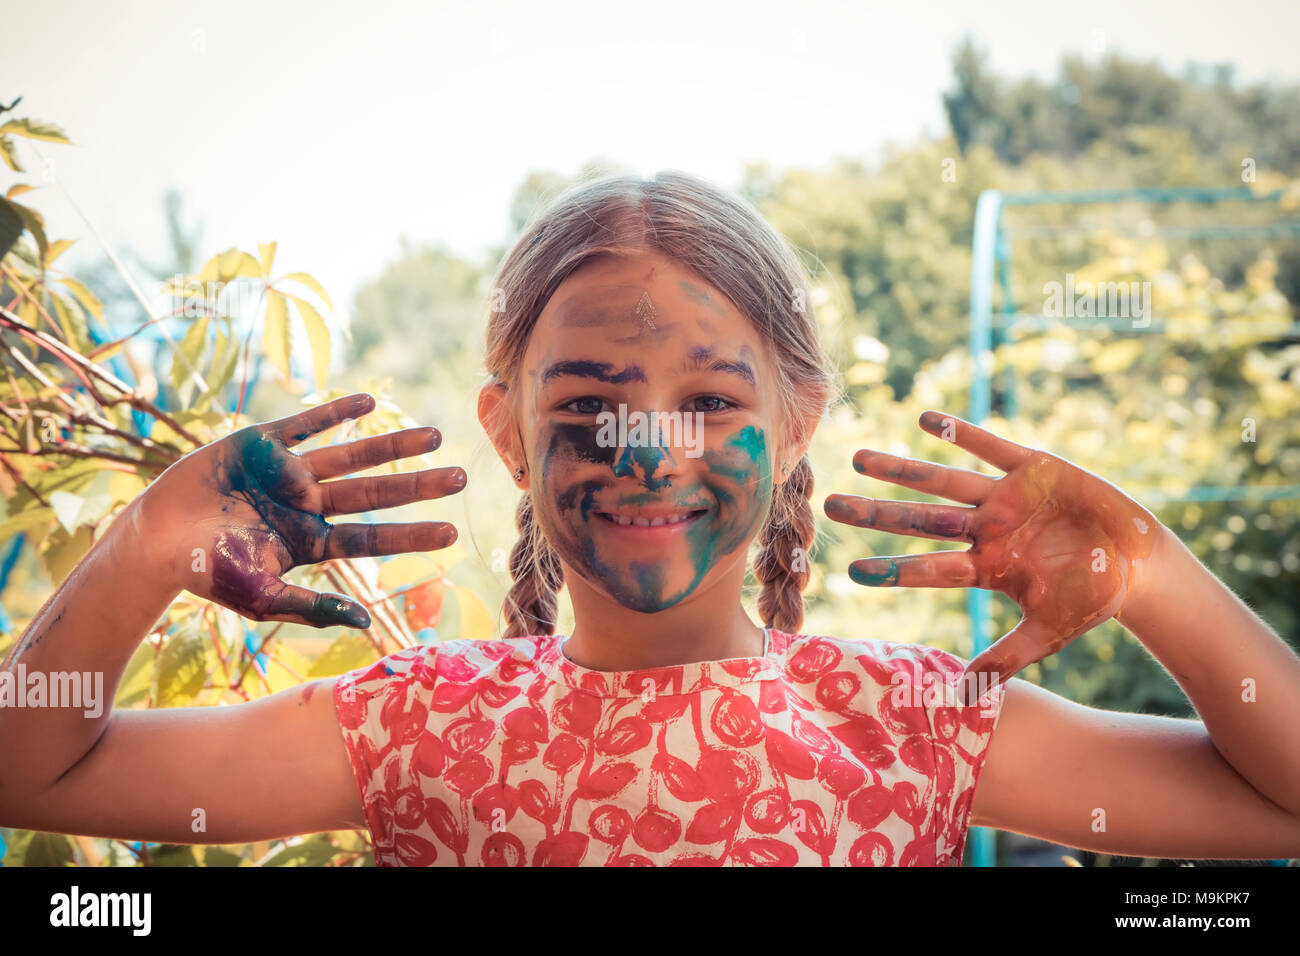 Creative Child girl smiling joyeuse peintre visage peint montrant les mains de jour d'enfant lumineux concept art development Banque D'Images